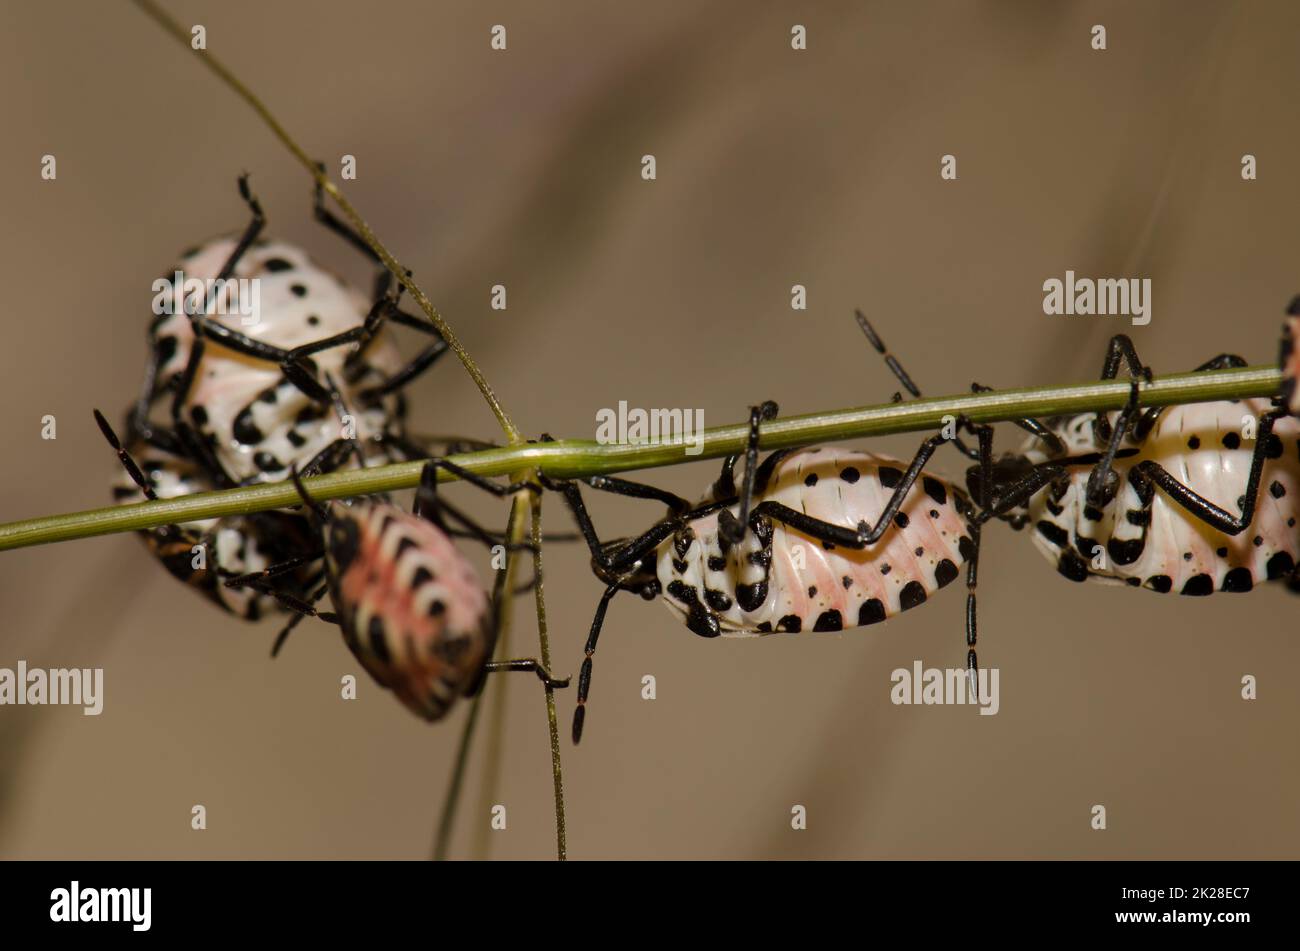 Nymphs of shield bug Euryderma ornata. Stock Photo